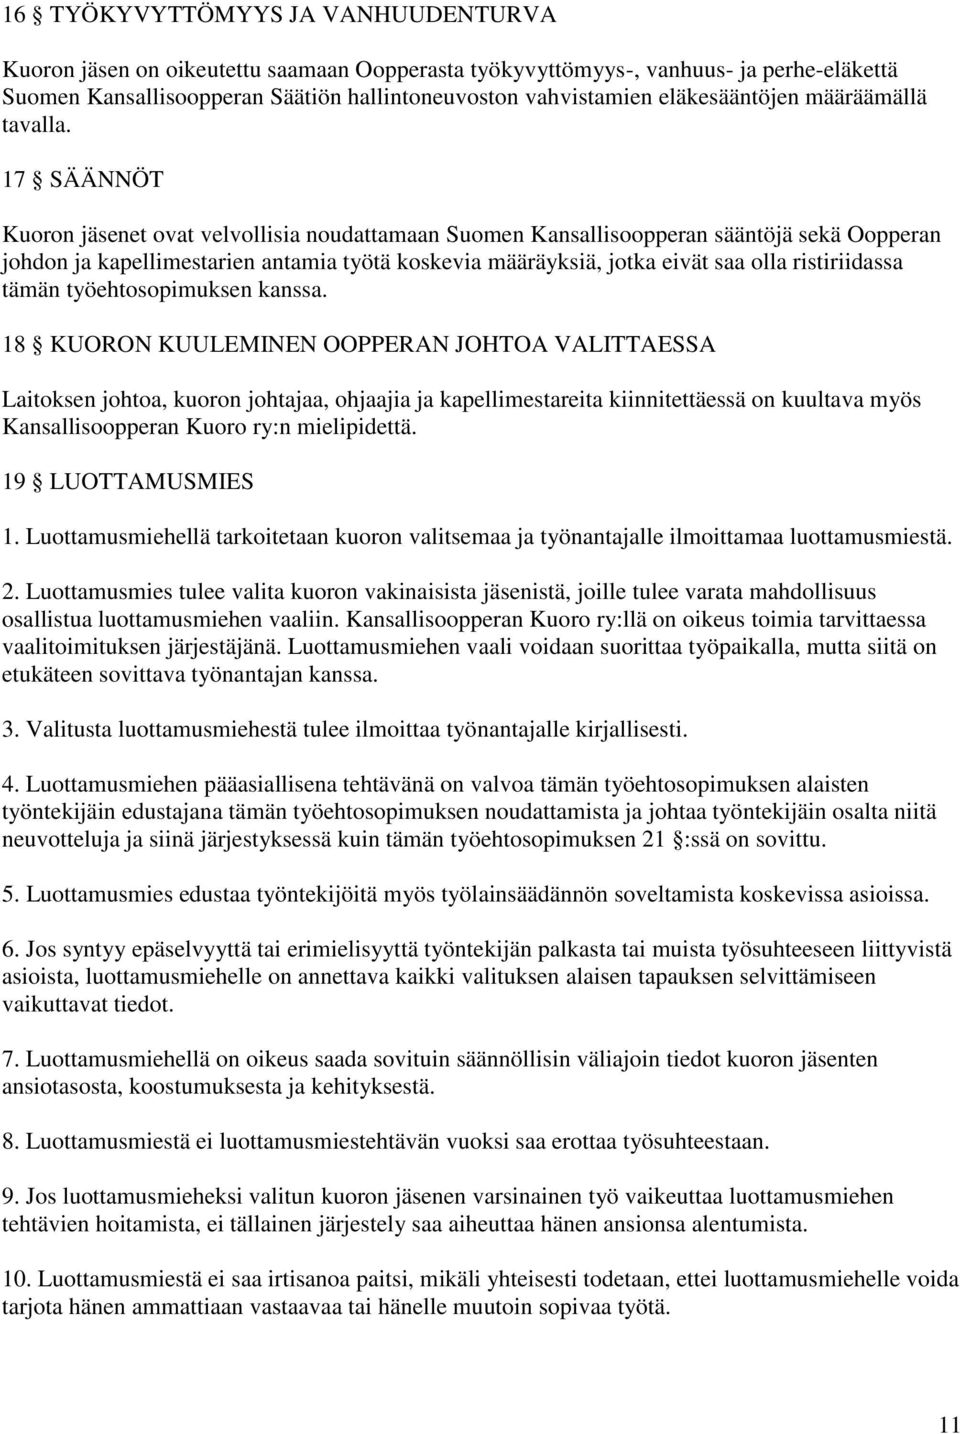 17 SÄÄNNÖT Kuoron jäsenet ovat velvollisia noudattamaan Suomen Kansallisoopperan sääntöjä sekä Oopperan johdon ja kapellimestarien antamia työtä koskevia määräyksiä, jotka eivät saa olla